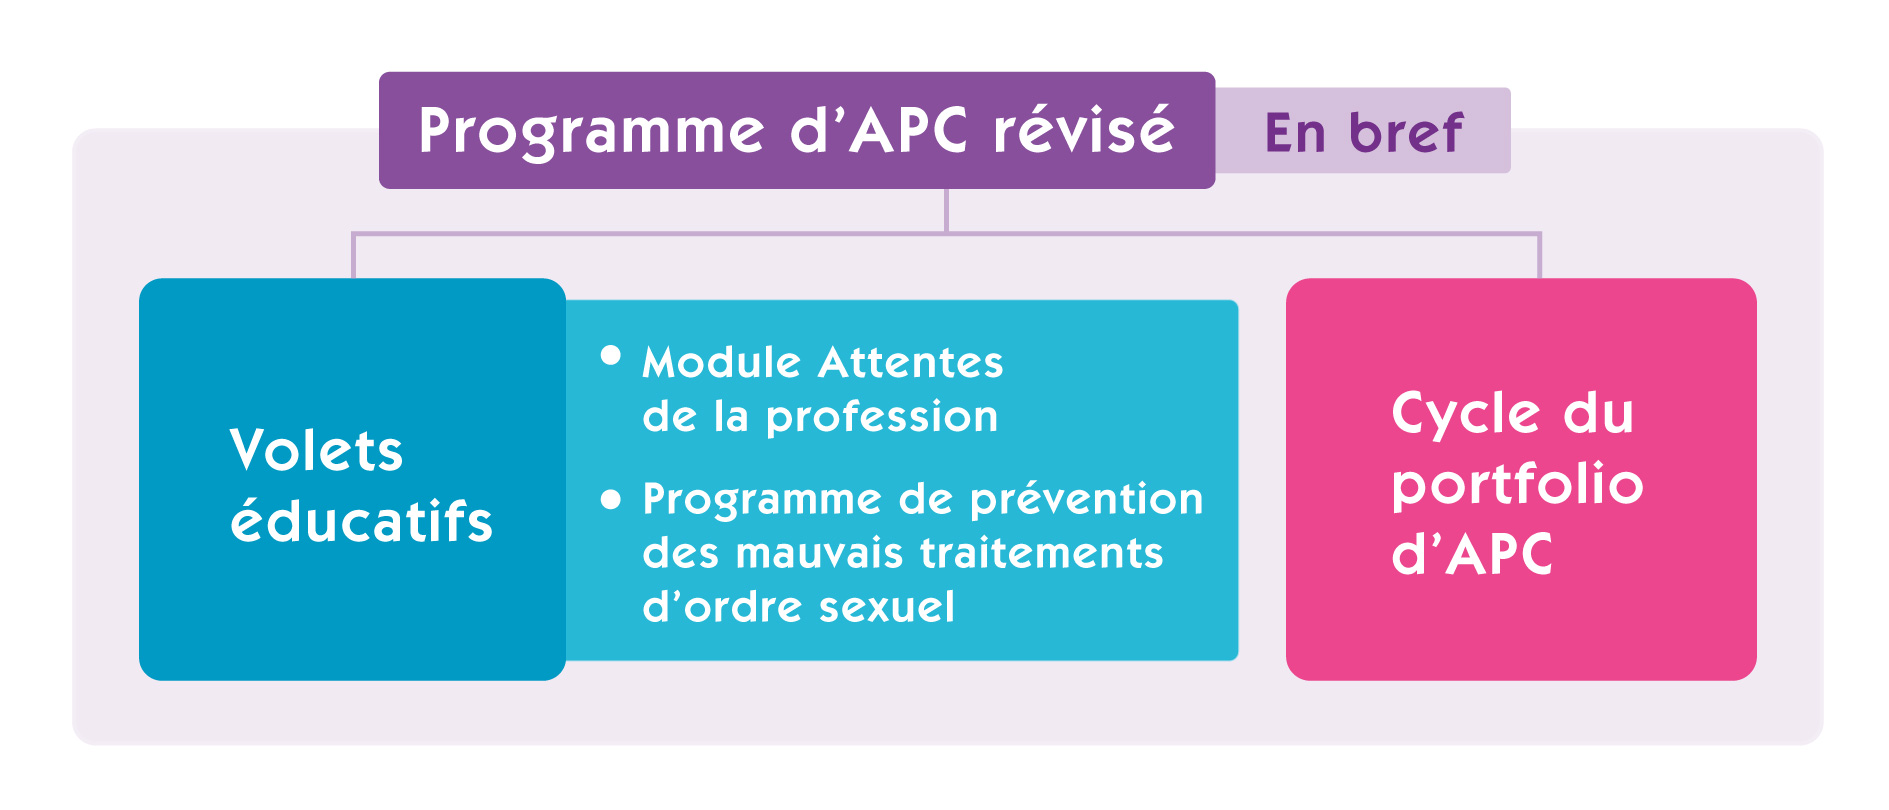 Graphique résumant le programme d'APC révisé. Dans le cadre bleu à gauche, on lit « Volets éducatifs ». Le premier point s'intitule « Module Attentes de le profession ». Le deuxième, « Programme de prévention des mauvais traitements d'ordre sexuel. ». Dans le cadre rose à droite, on lit « Cycle du portfolio d'APC ».